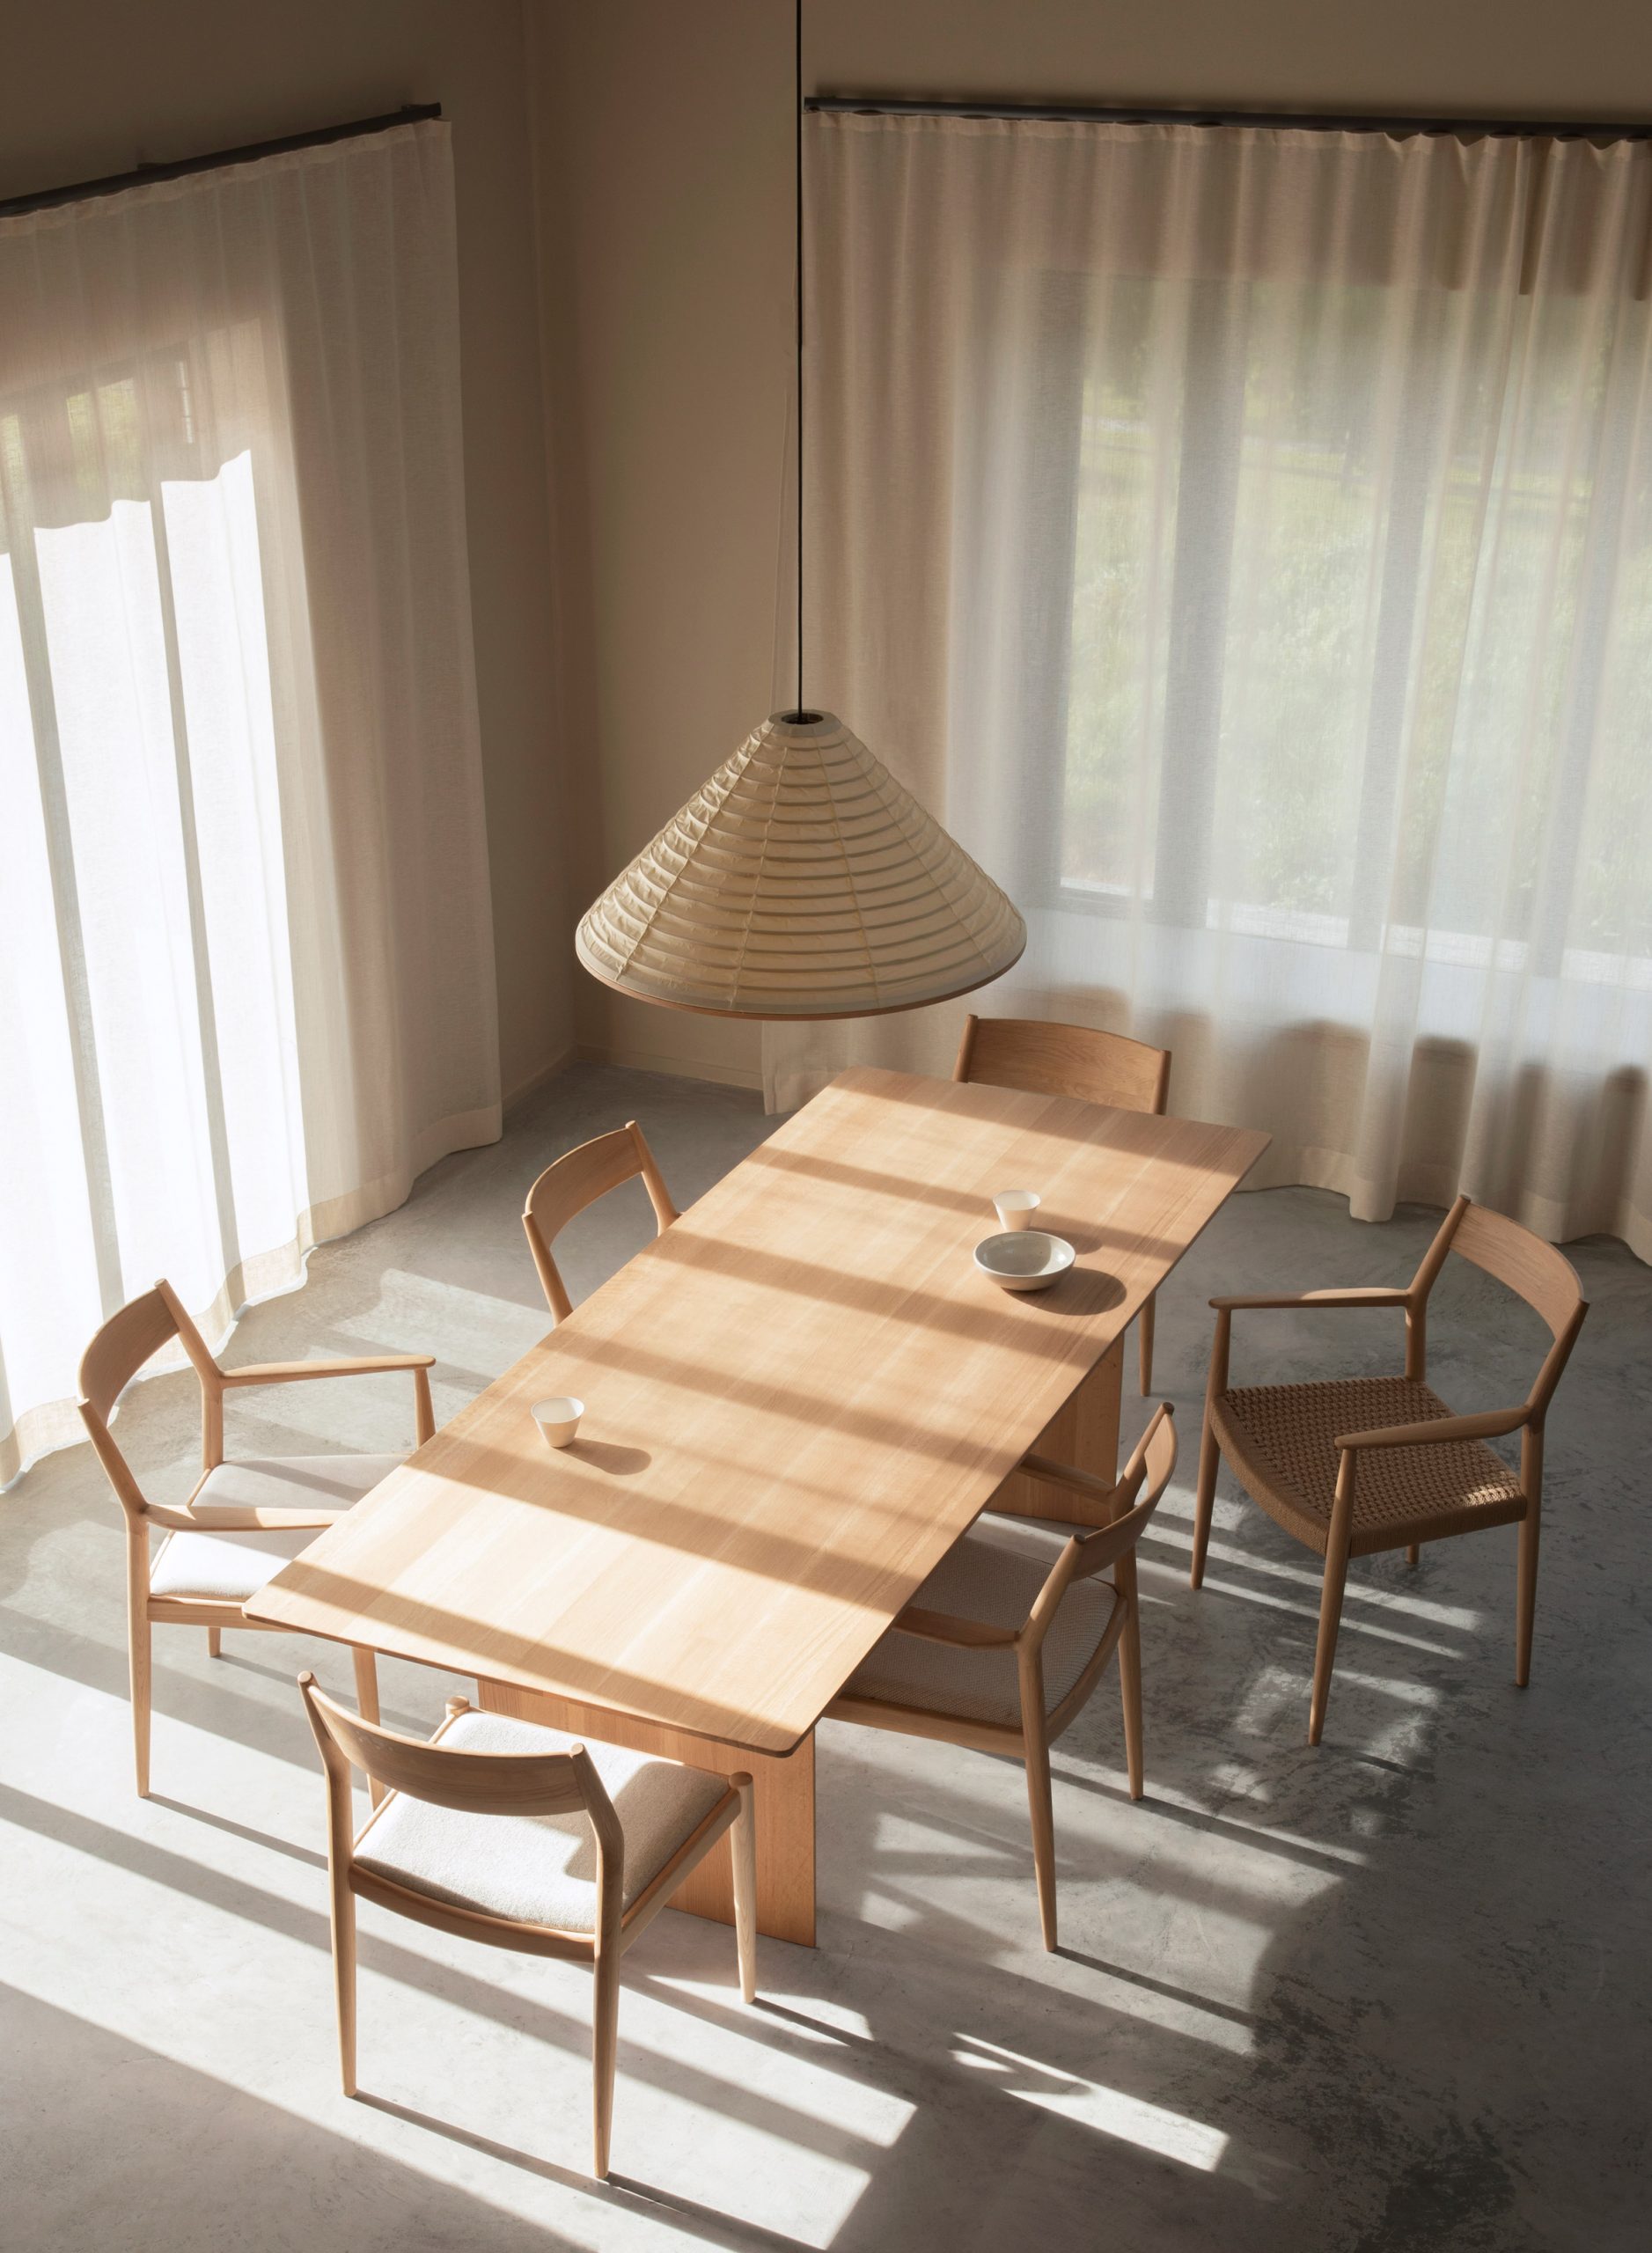 Từ trên cao nhìn xuống, khu vực ăn uống với bộ bàn ăn bằng gỗ đơn giản nhưng xinh đẹp, kết hợp với những tia nắng chiếu qua tấm rèm mỏng manh càng thêm phần tinh tế.